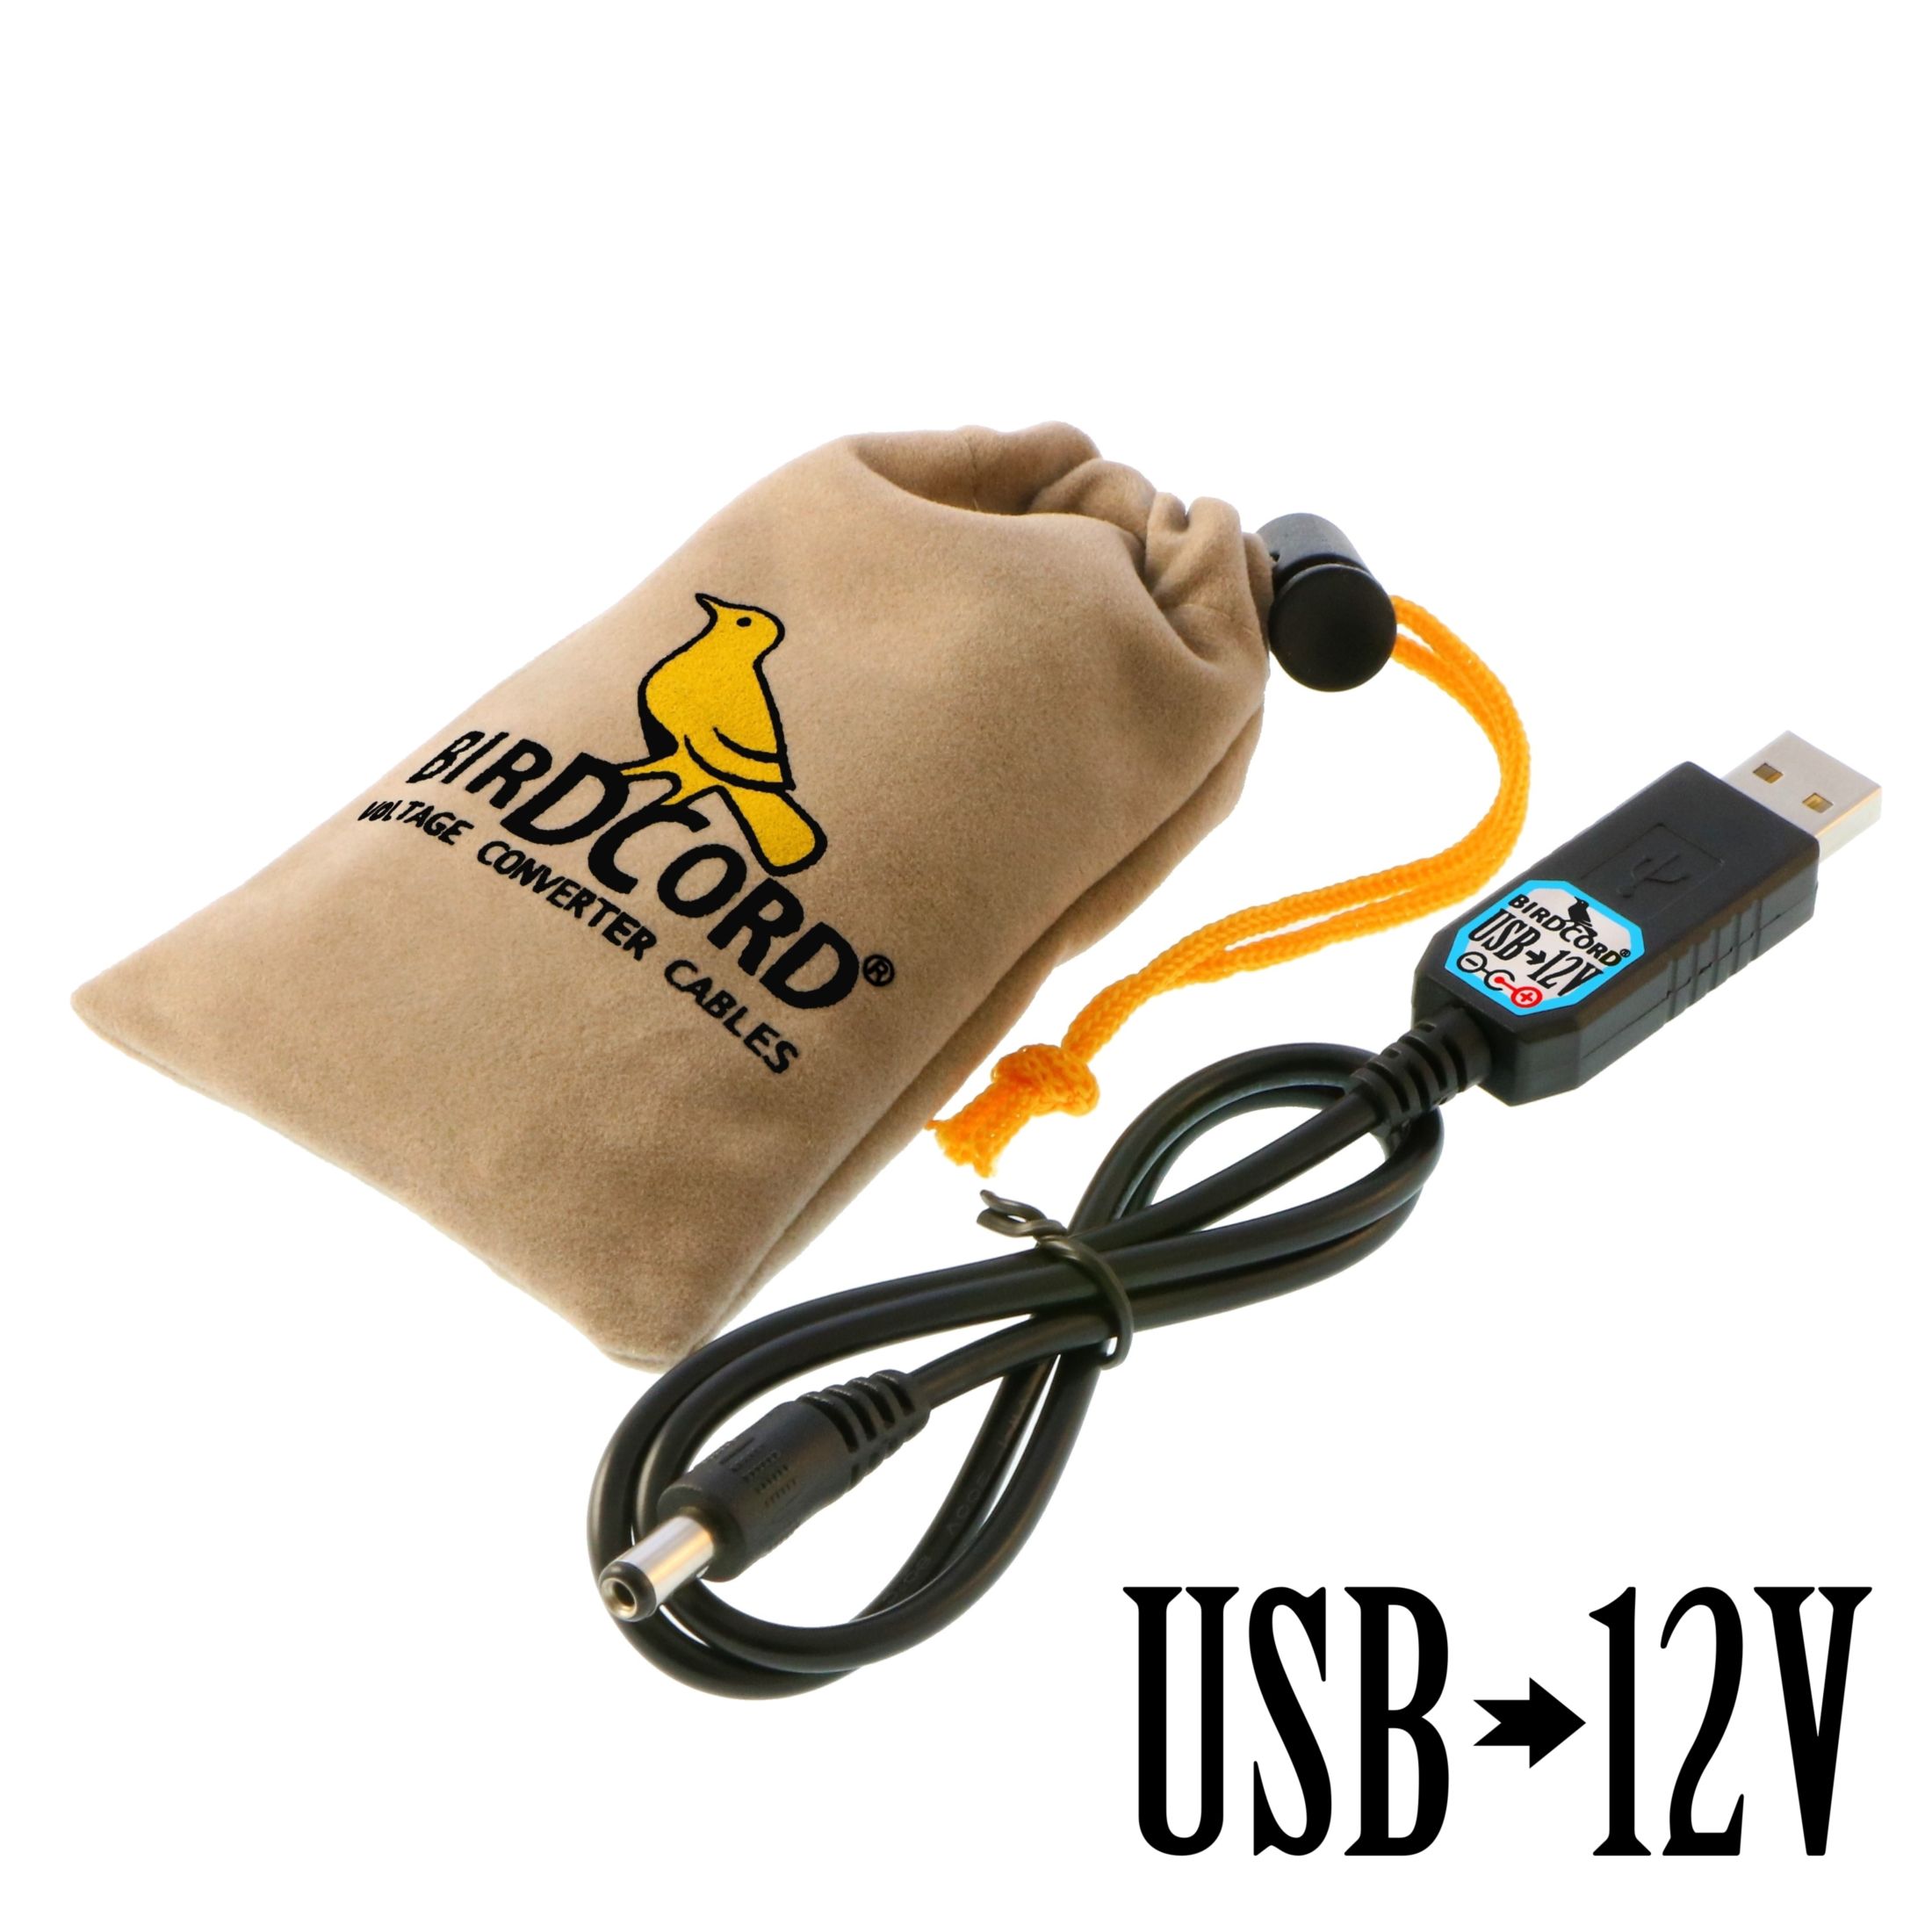 Correctamente prestar prisa Birdcord USB to 12V Converter Cable | Songbird FX